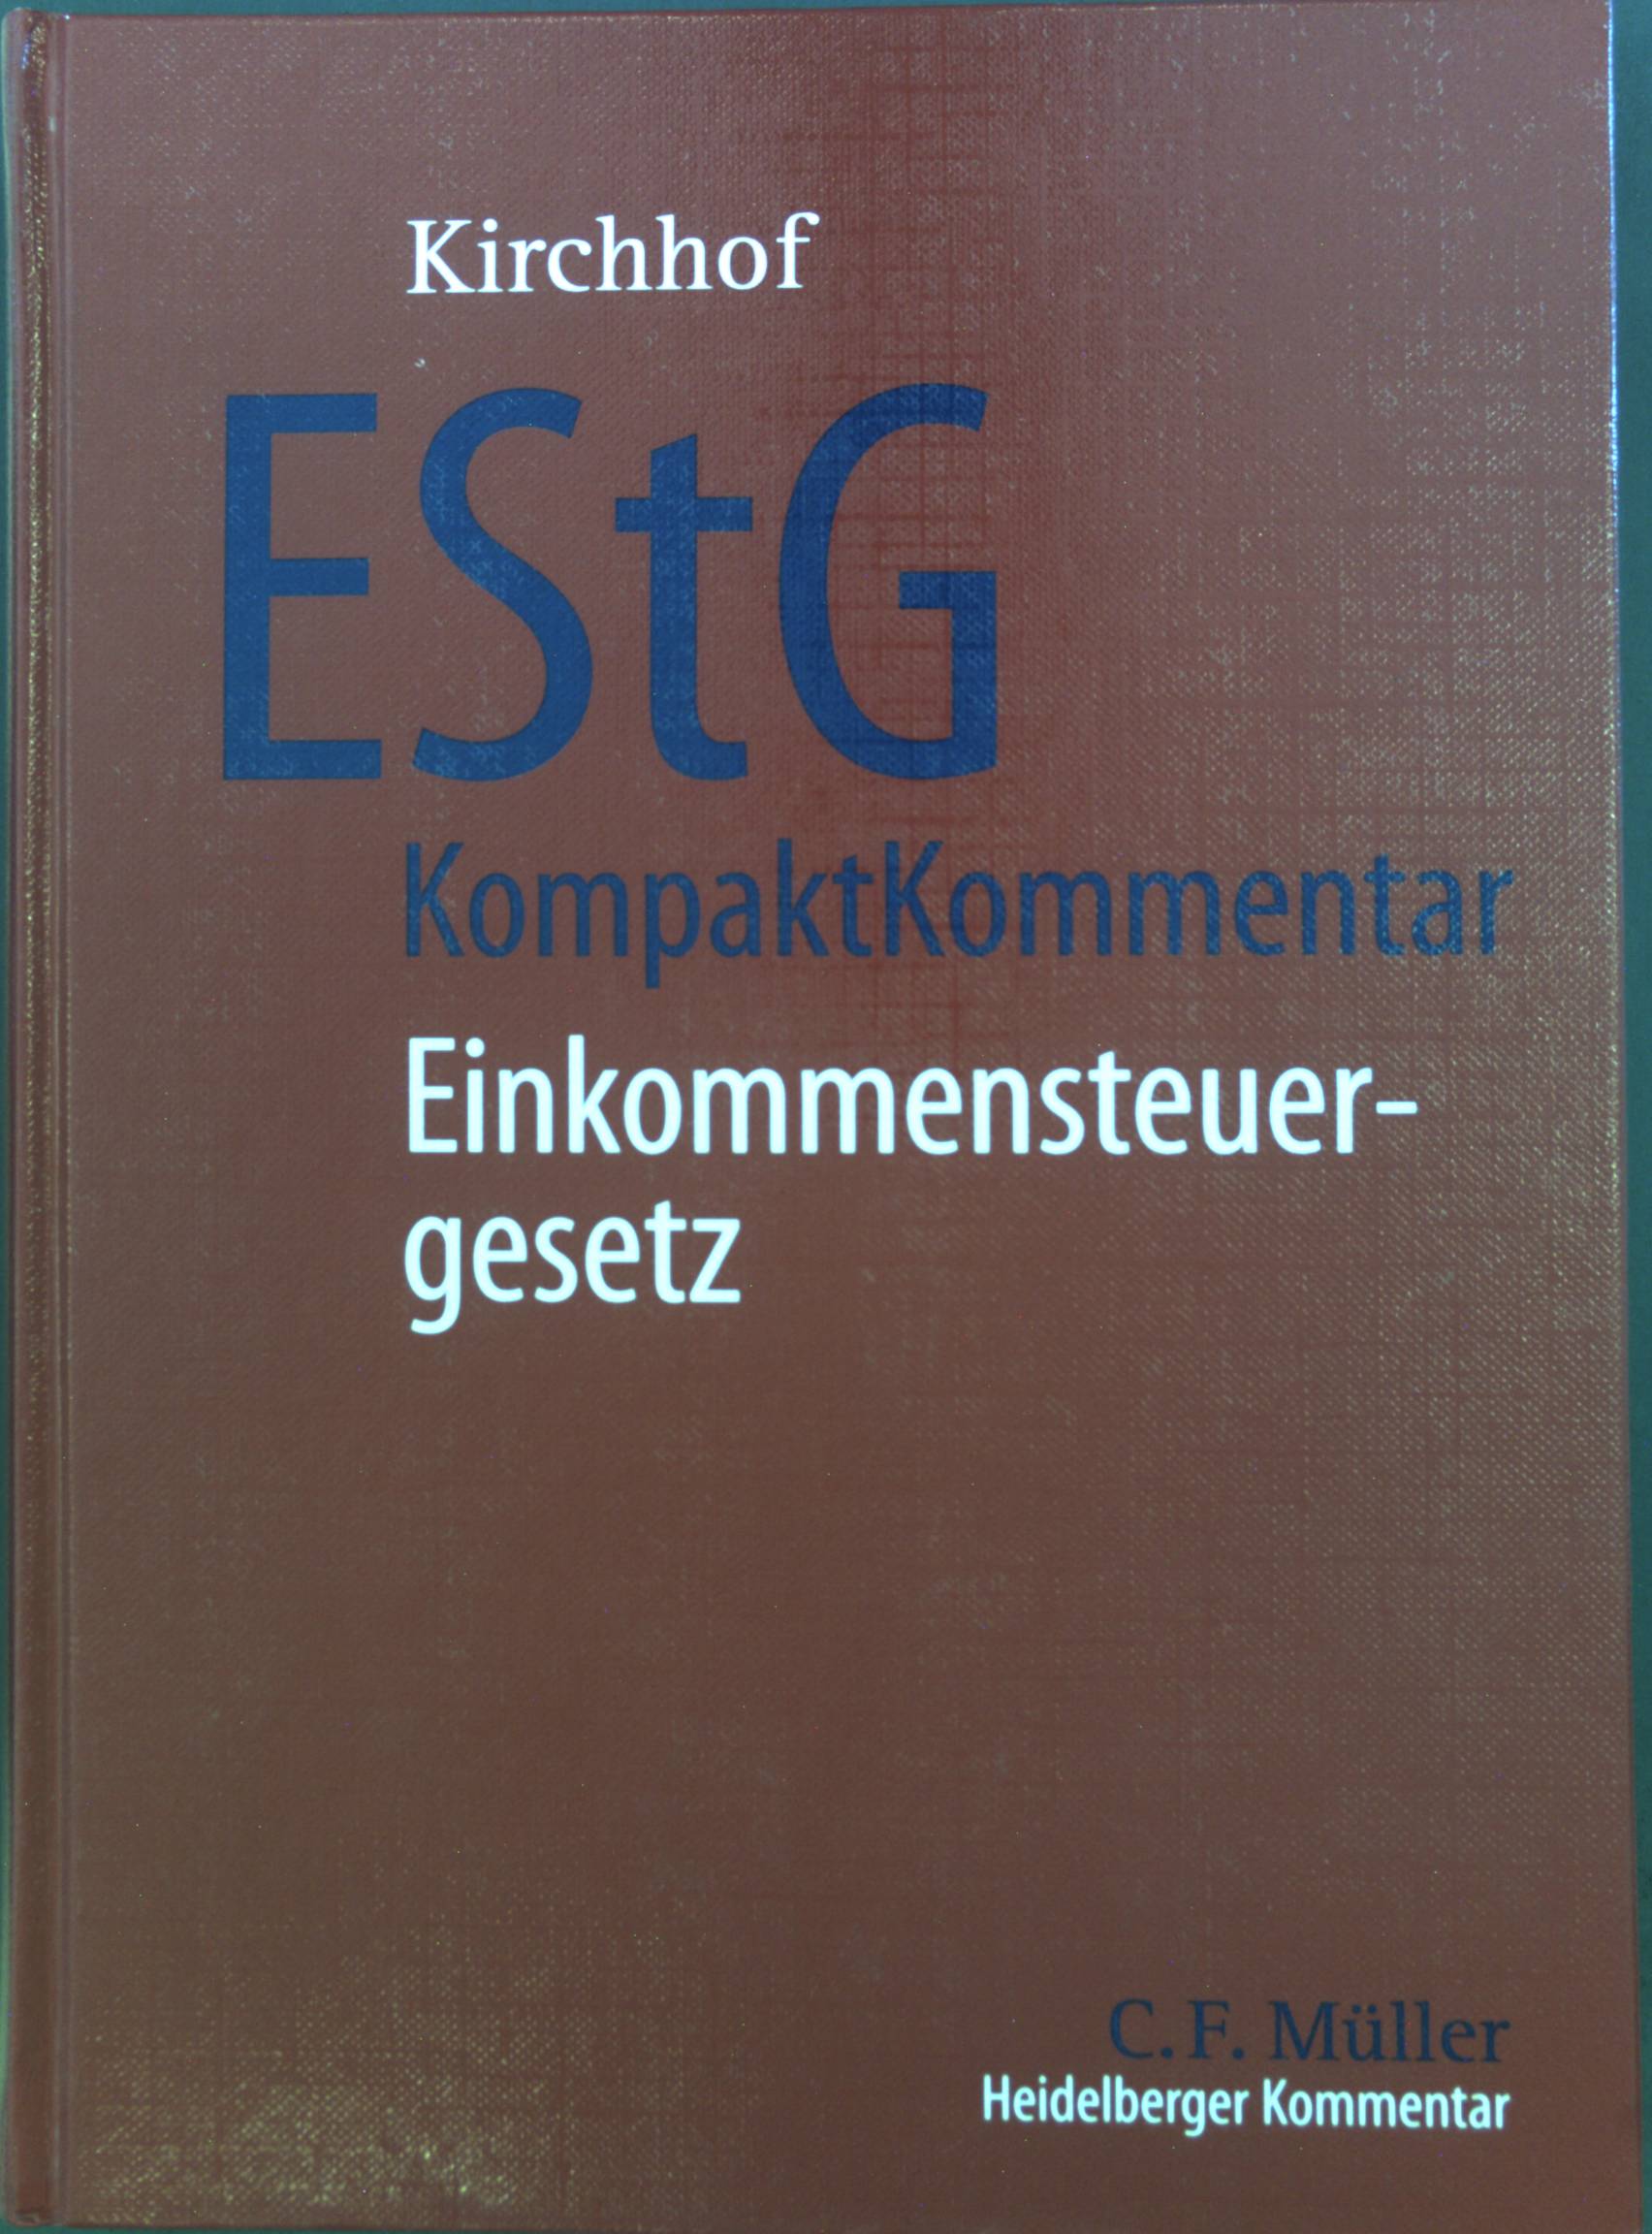 EStG-KompaktKommentar : Einkommensteuergesetz. - Kirchhof, Paul